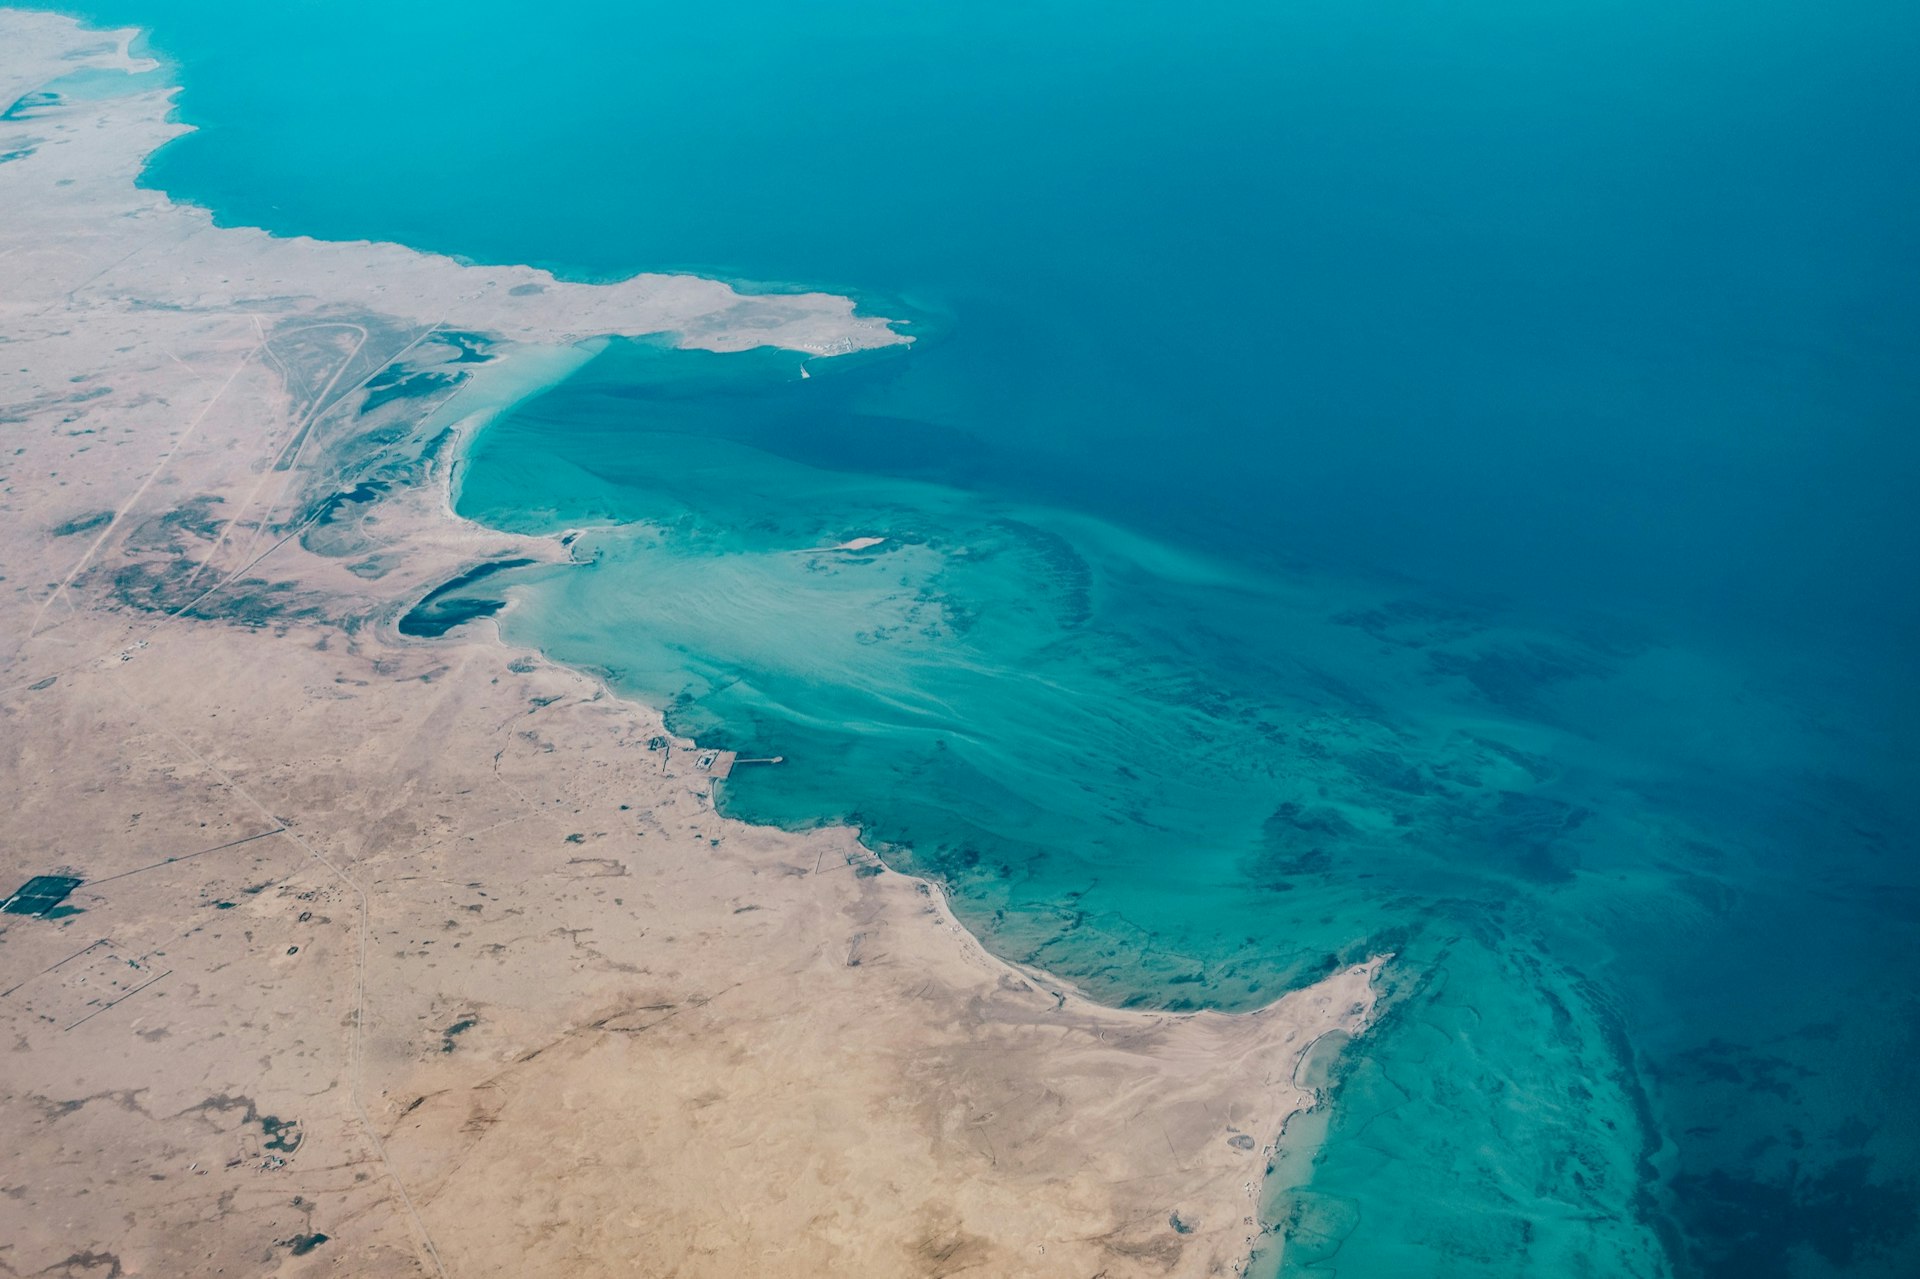 Aerial view of a coastal region in Qatar